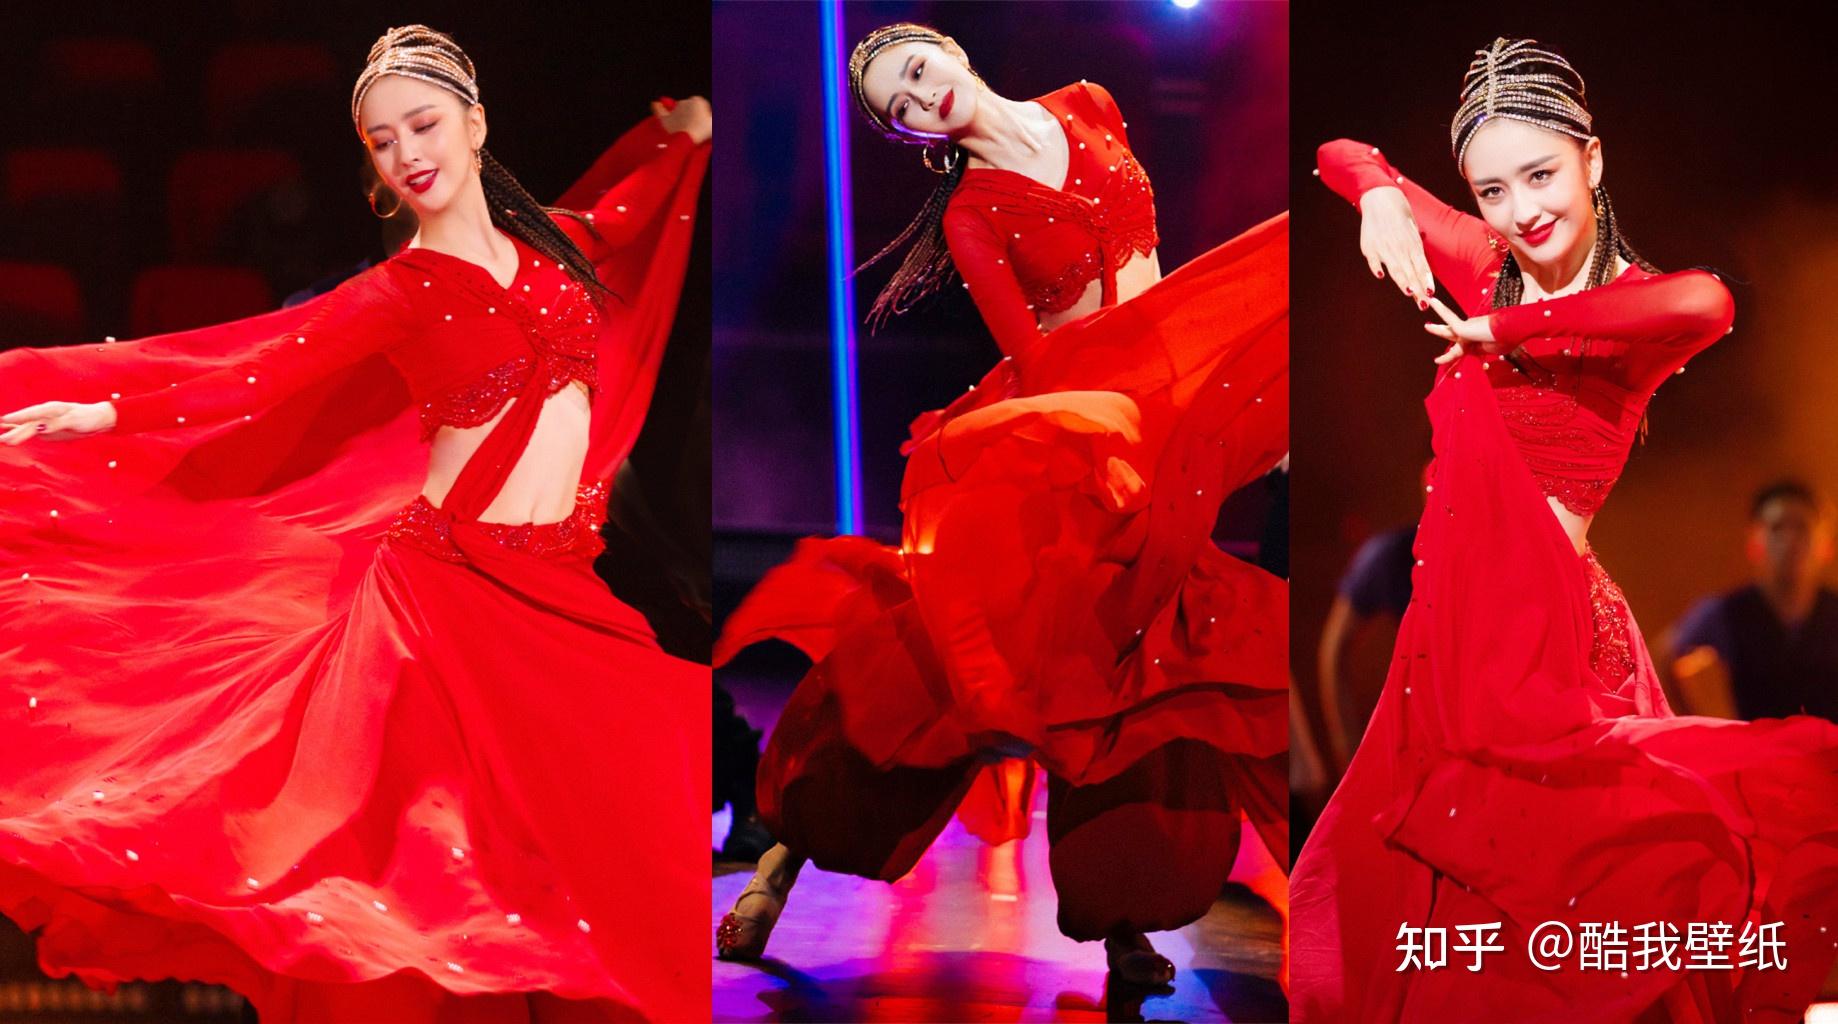 佟丽娅舞蹈生首秀《篝火》,这造型就是绝美啊,一身红衣出场热情如火